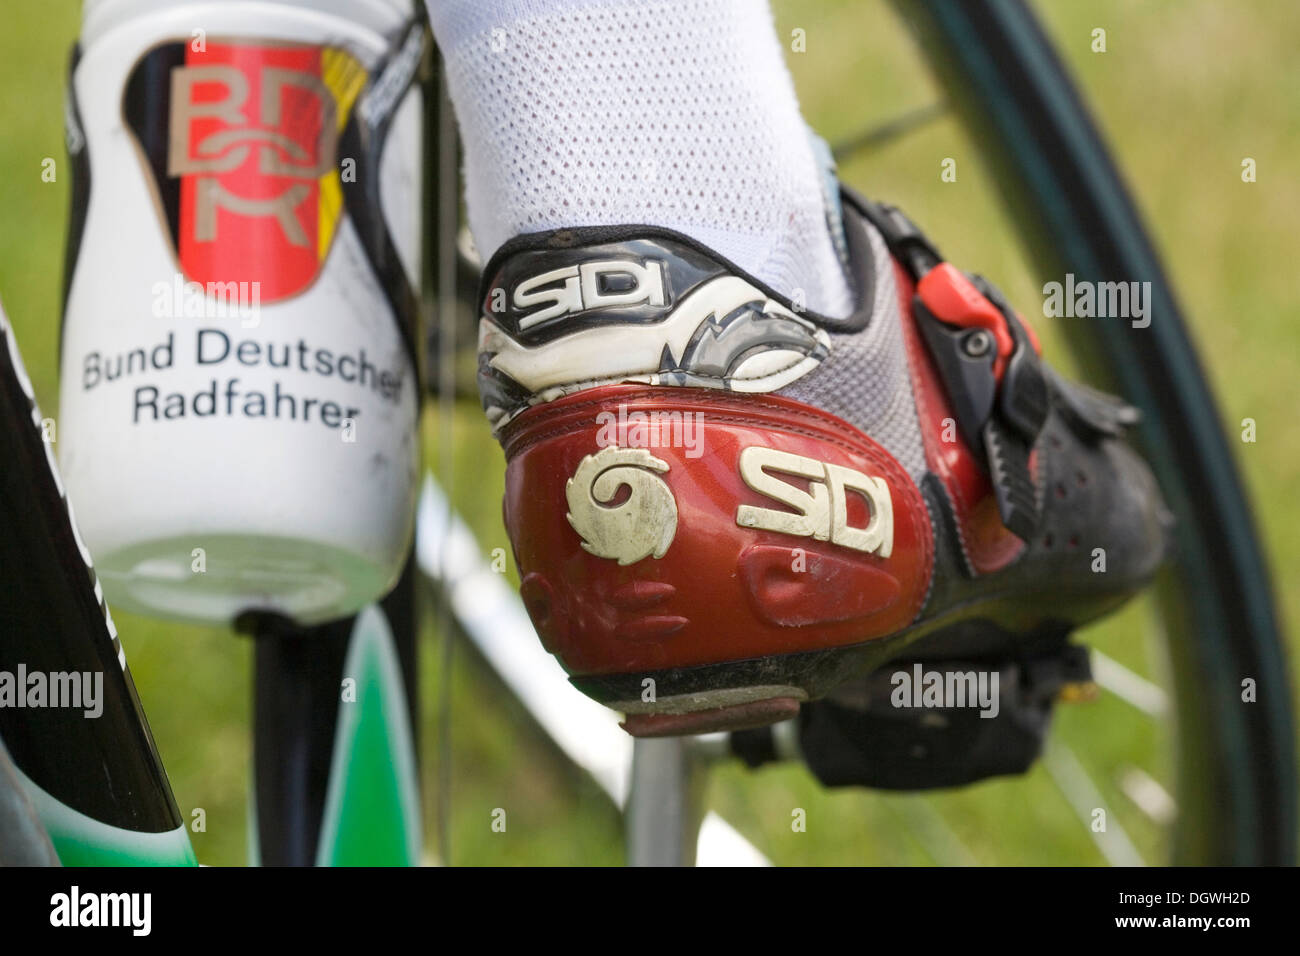 Il piede destro di un ciclista racing su un pedale, borraccia con il logo della BDR, Bund Deutscher Rennfahrer Foto Stock